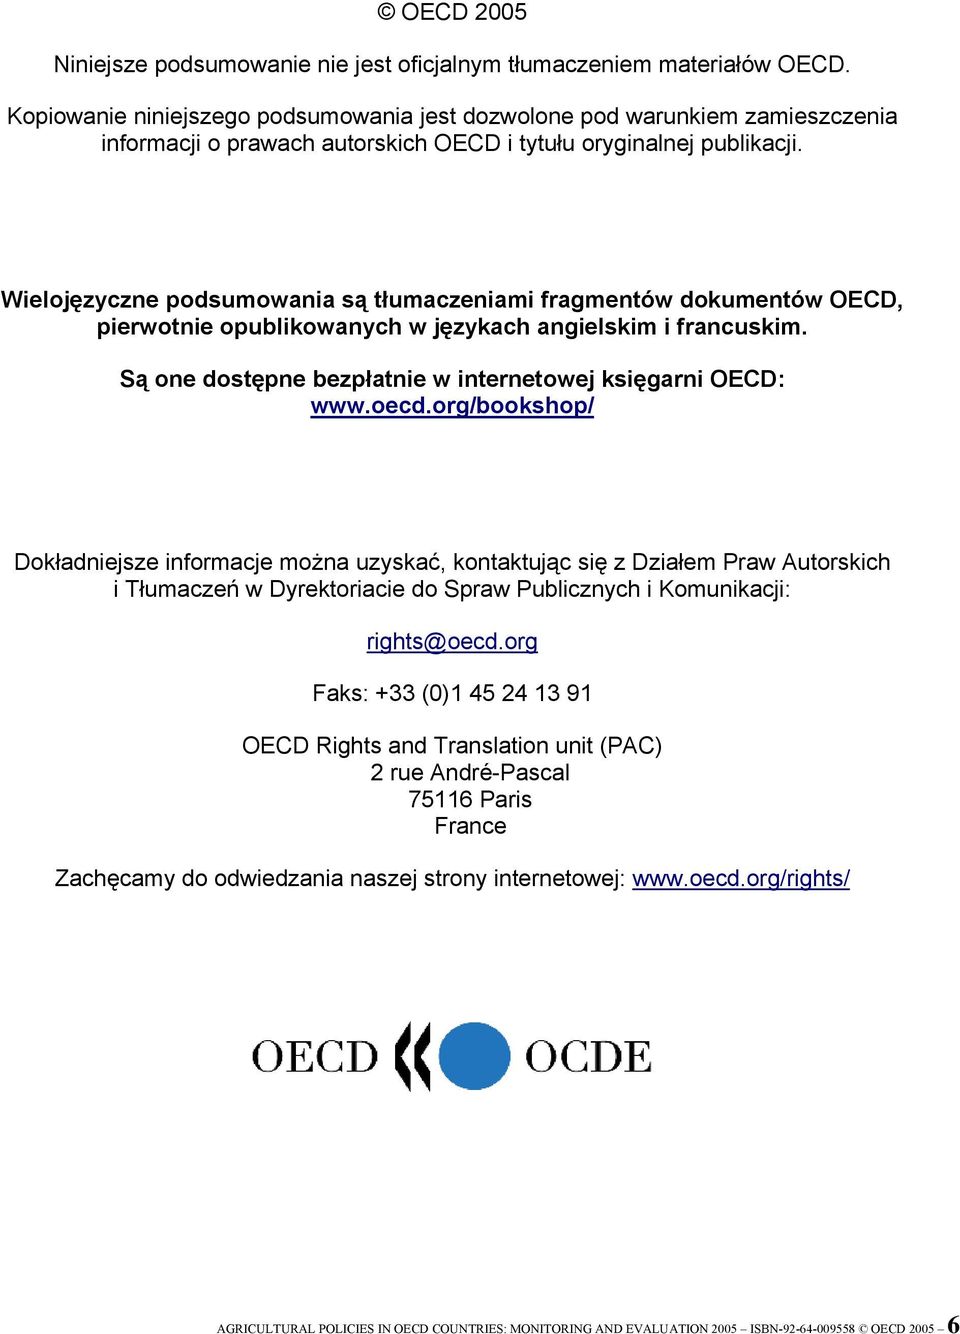 Wielojęzyczne podsumowania są tłumaczeniami fragmentów dokumentów OECD, pierwotnie opublikowanych w językach angielskim i francuskim. Są one dostępne bezpłatnie w internetowej księgarni OECD: www.